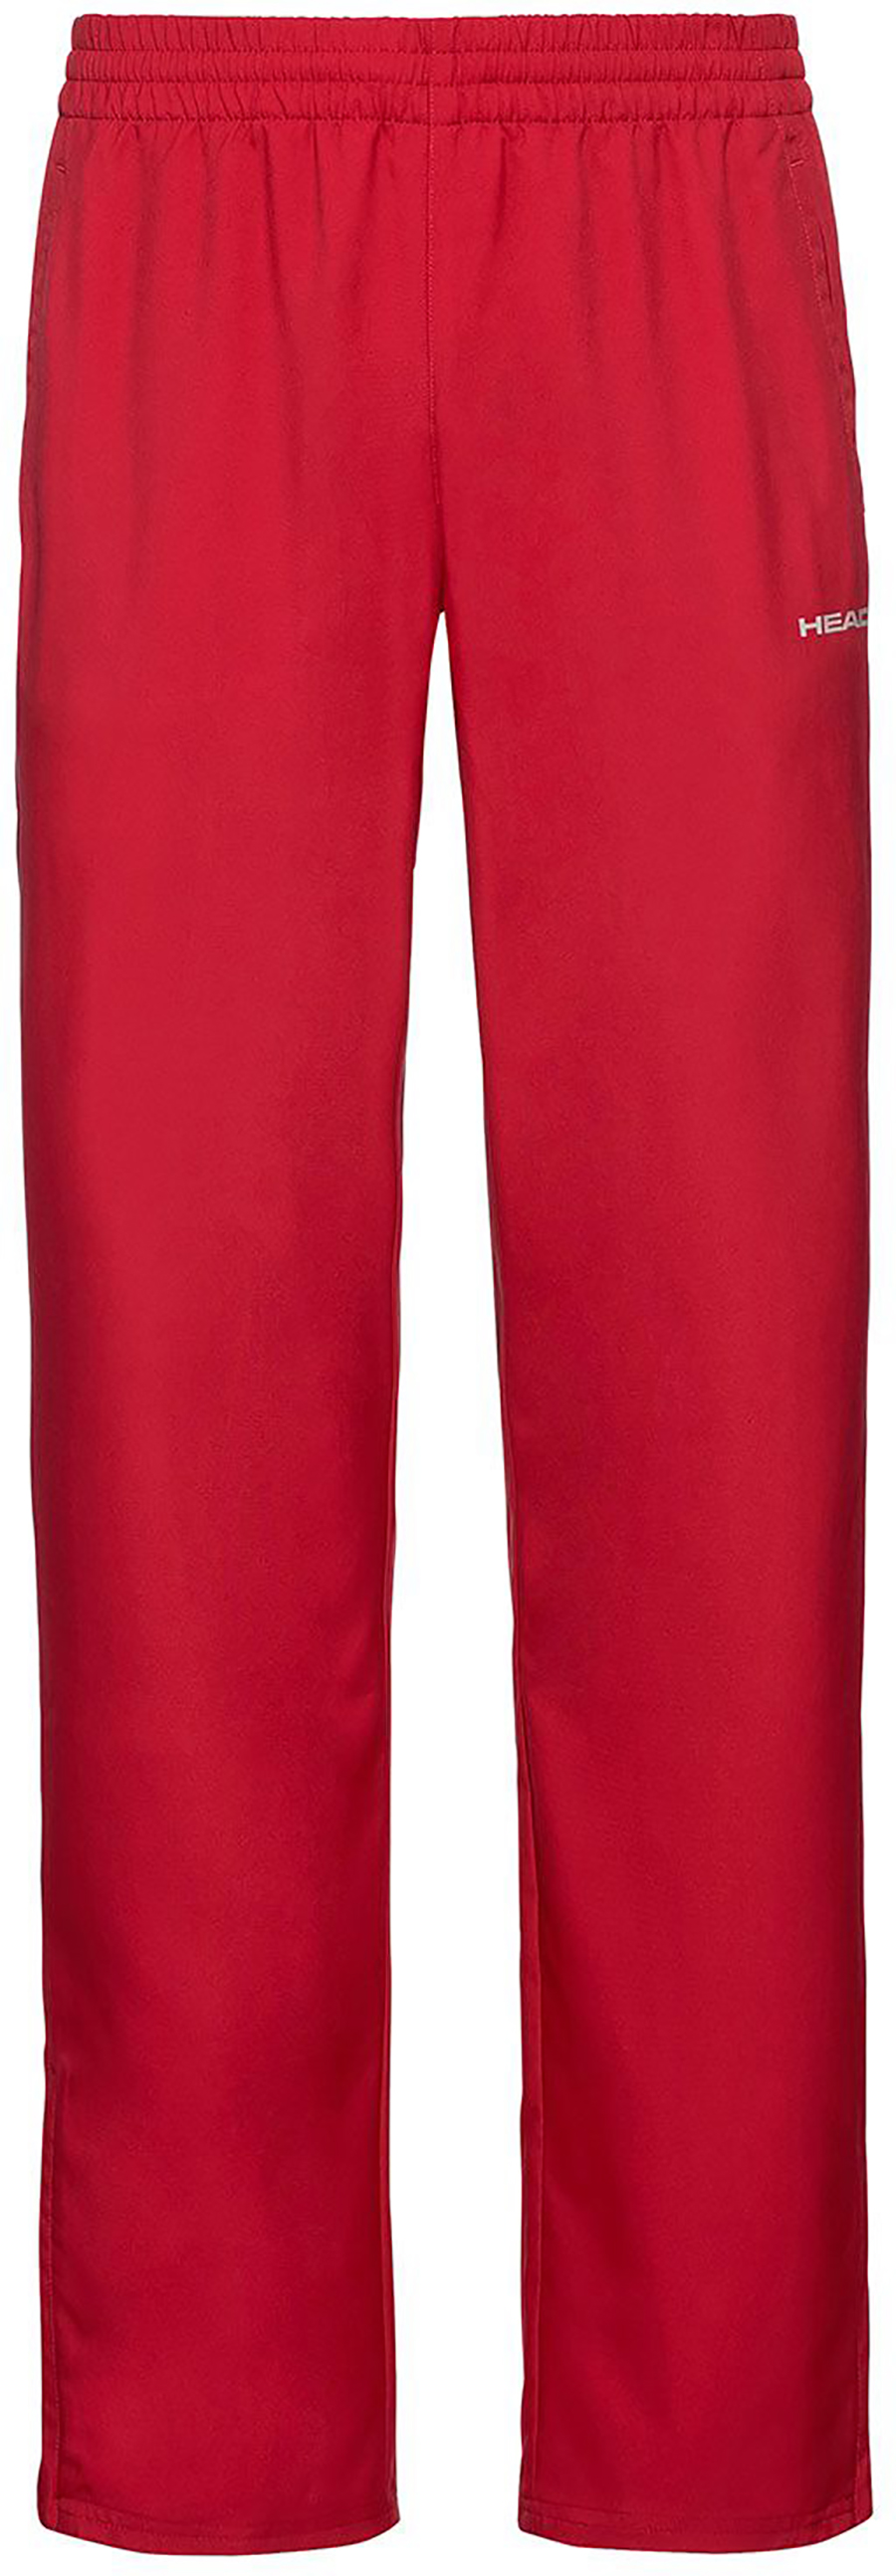 Спортивные брюки унисекс Head 811329 красные XL